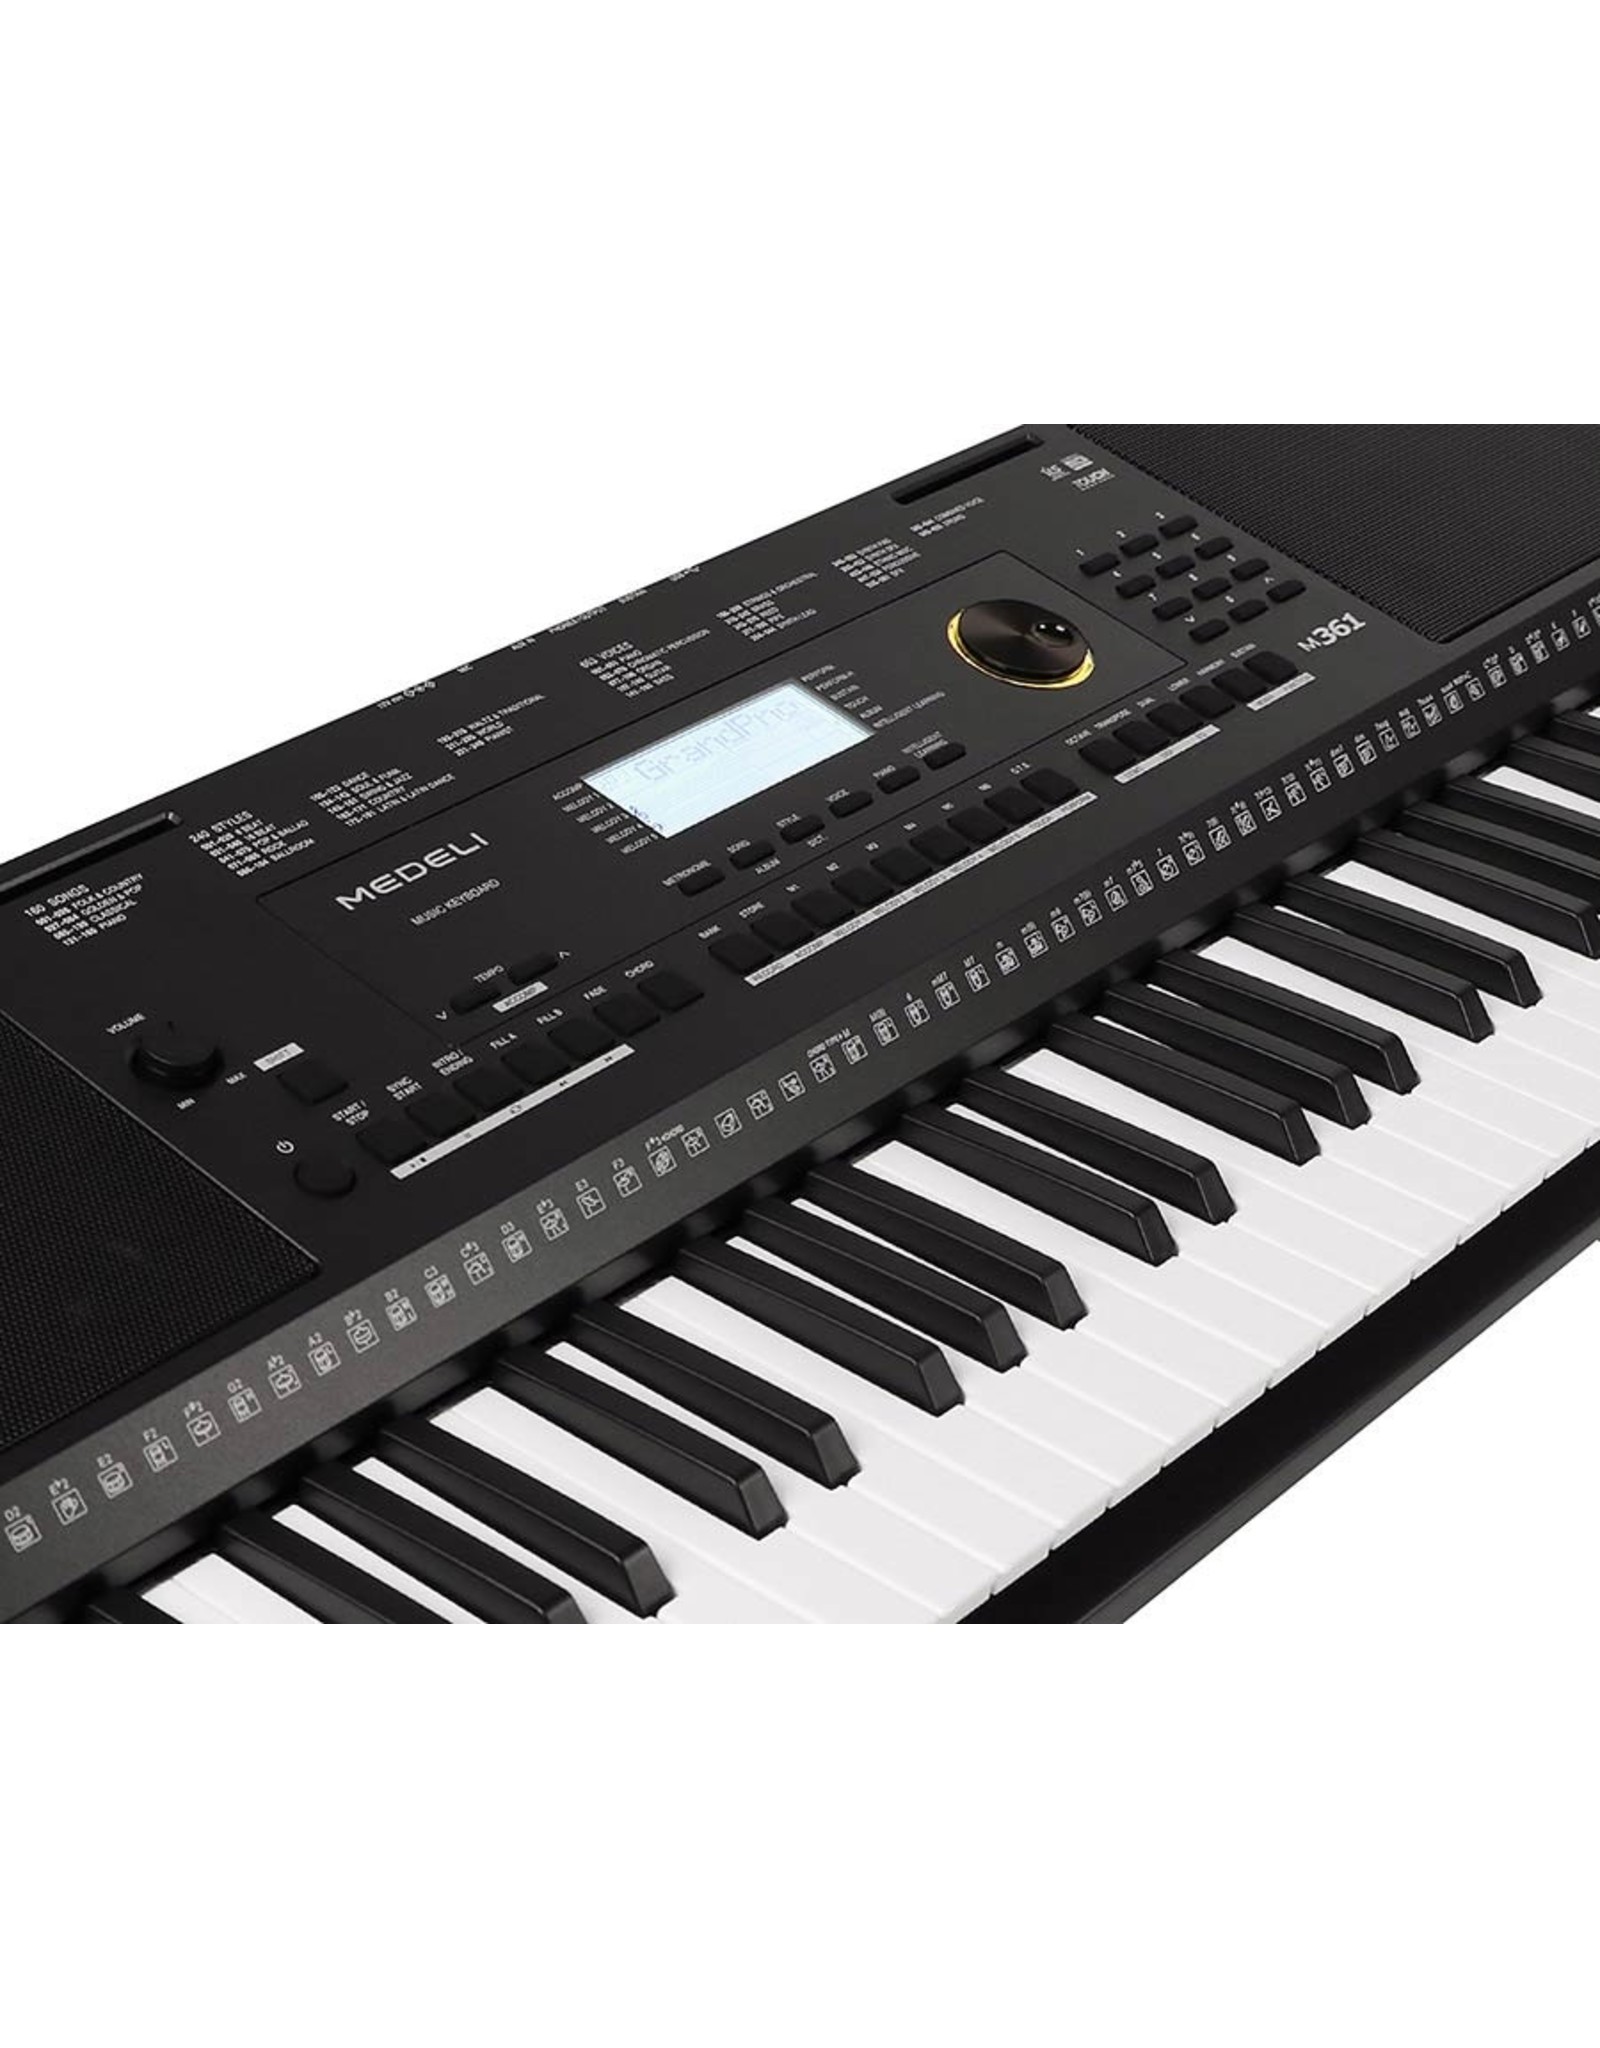 Medeli Medeli Millenium Series M361 keyboard | Met Specter Akkoordenkaart